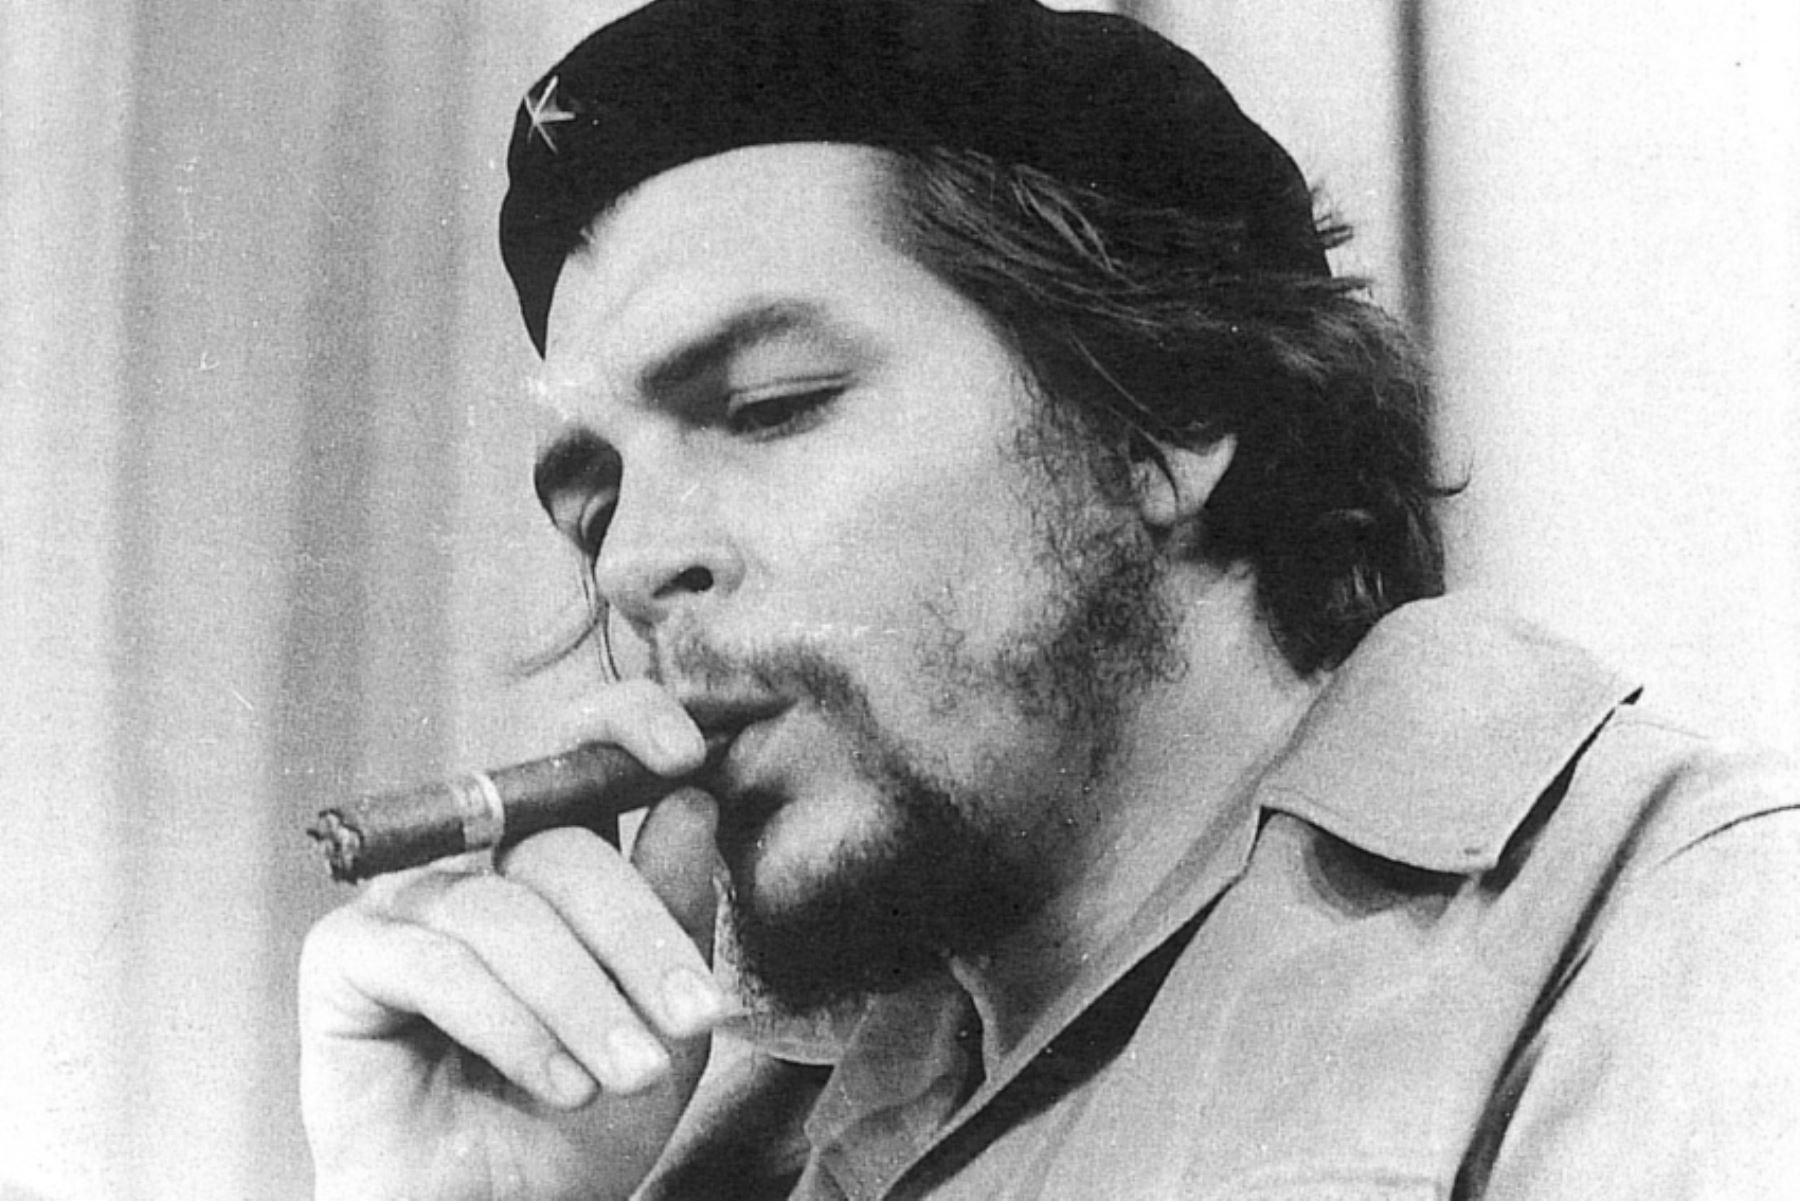 Эрнесто че Гевара с сигарой